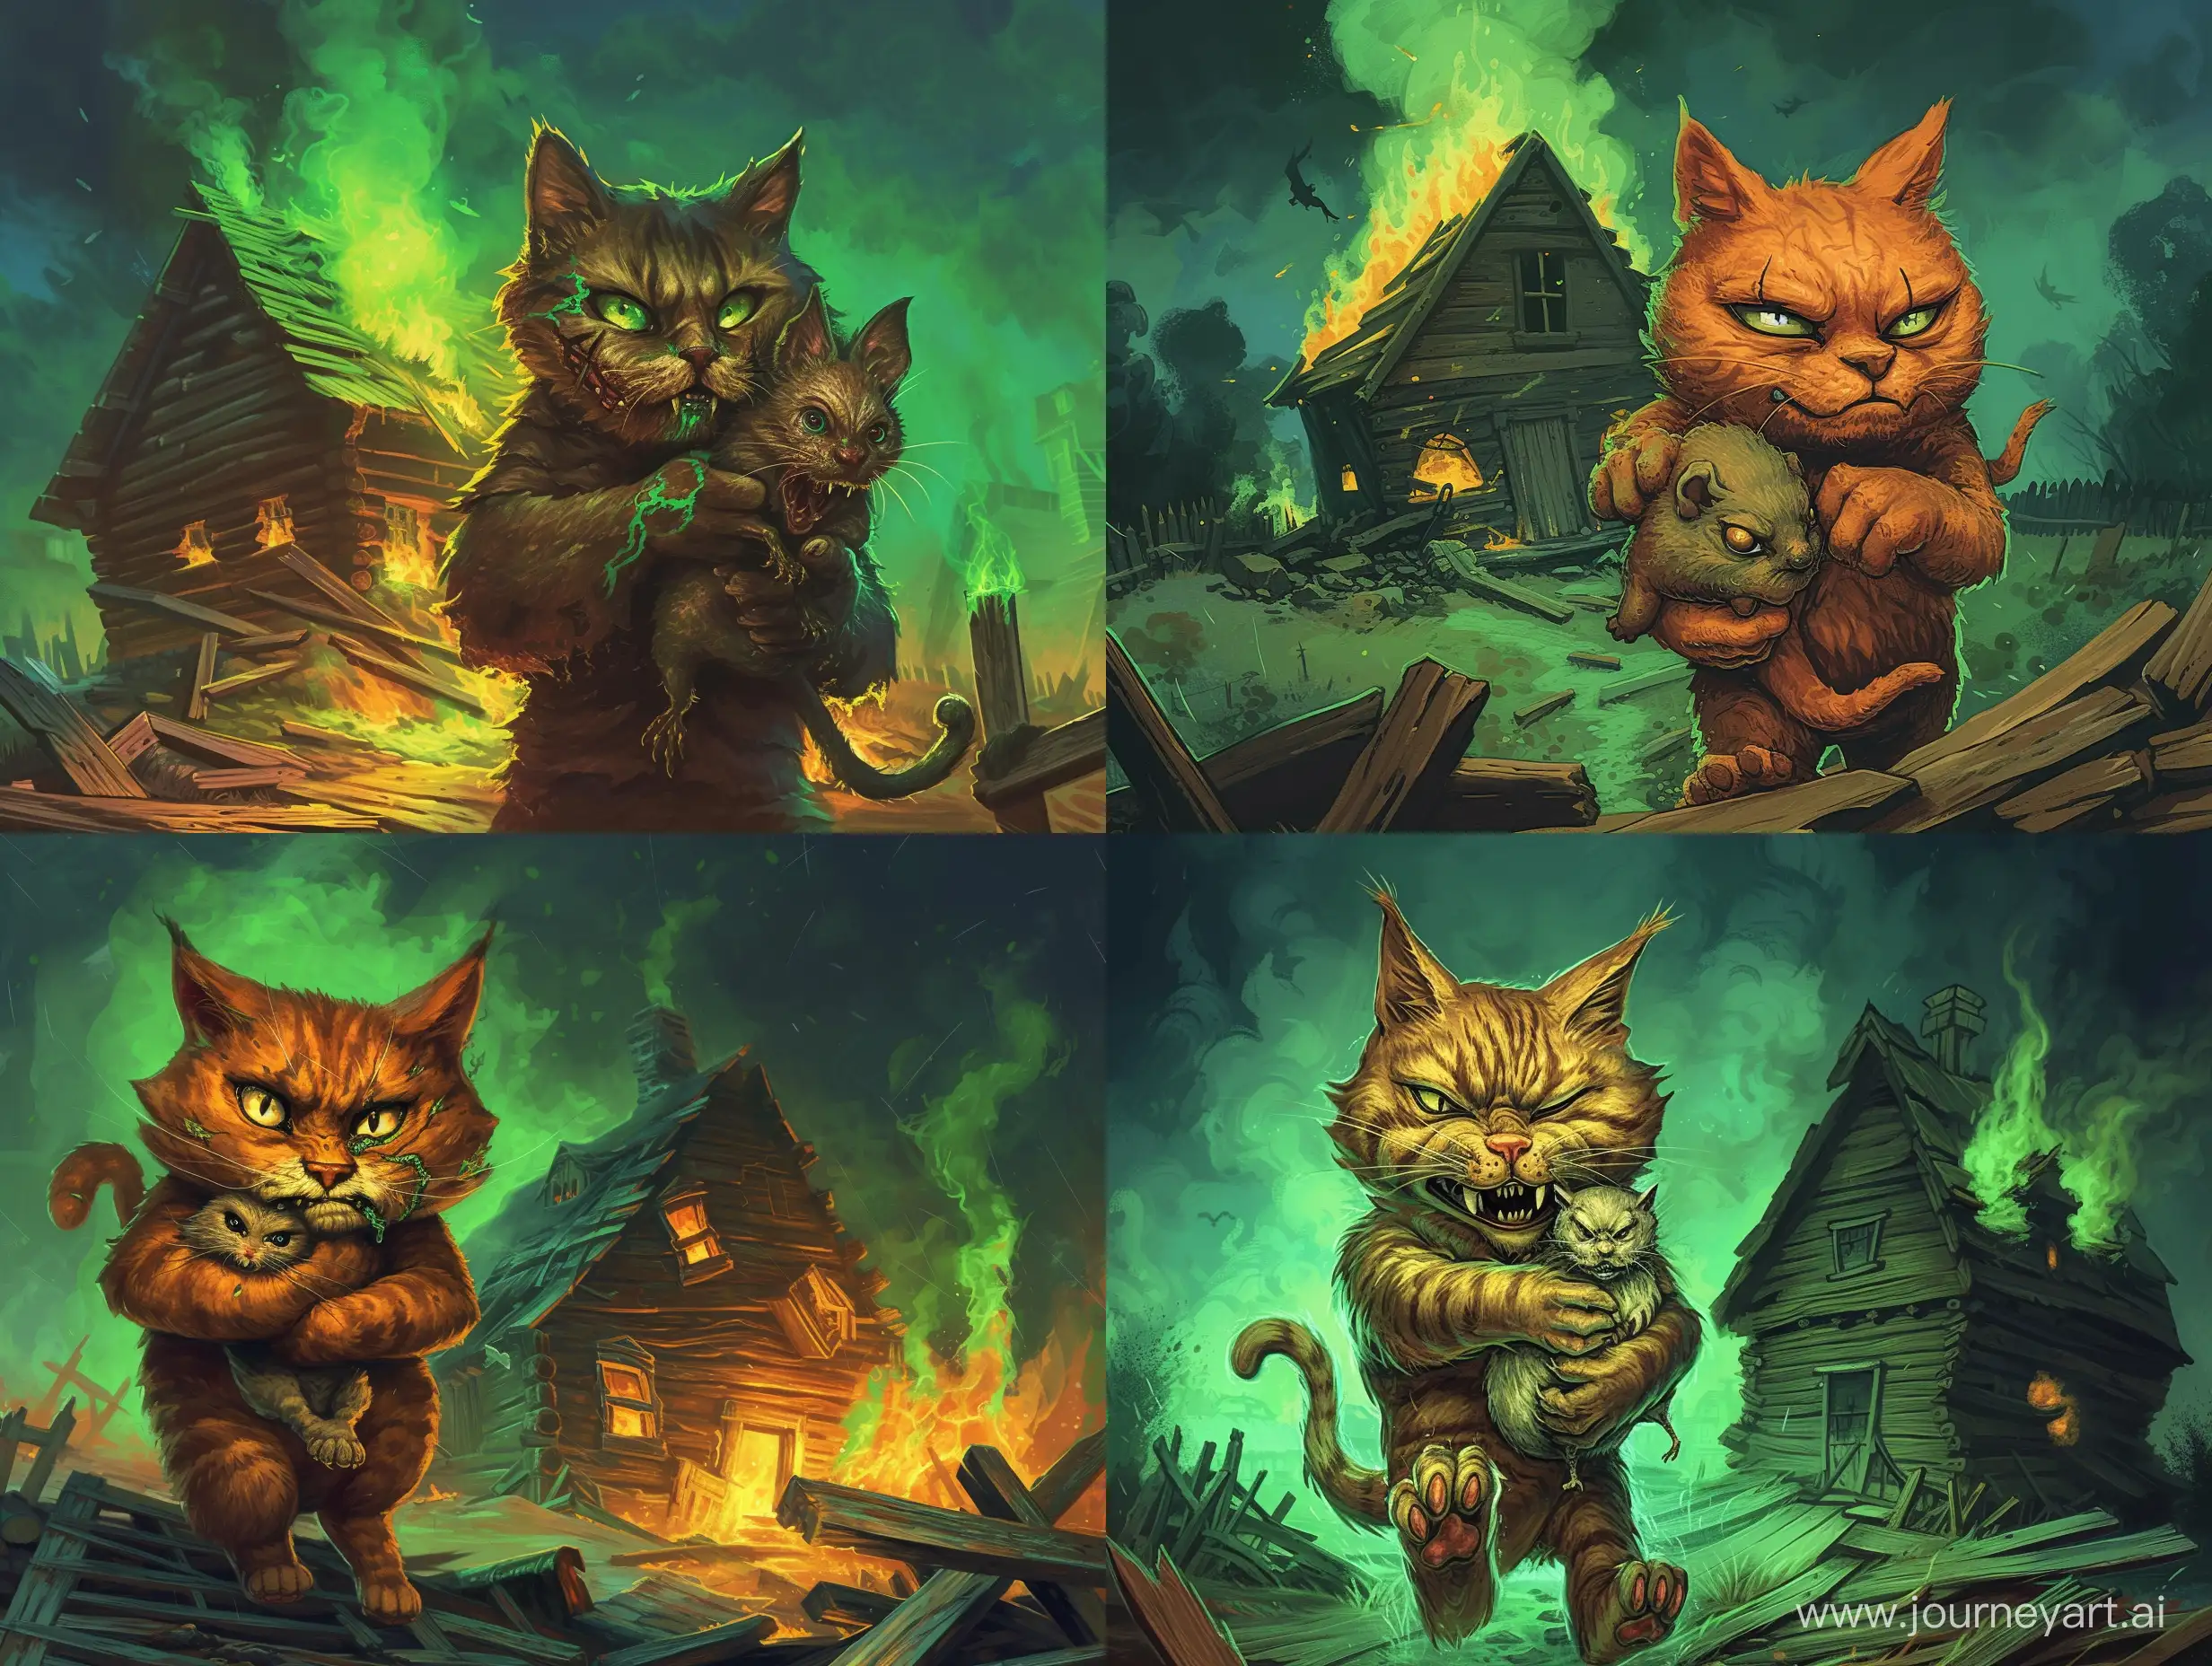 Sinister-Cat-Holding-Disgruntled-Mole-Amidst-Burning-Medieval-Horror-Scene